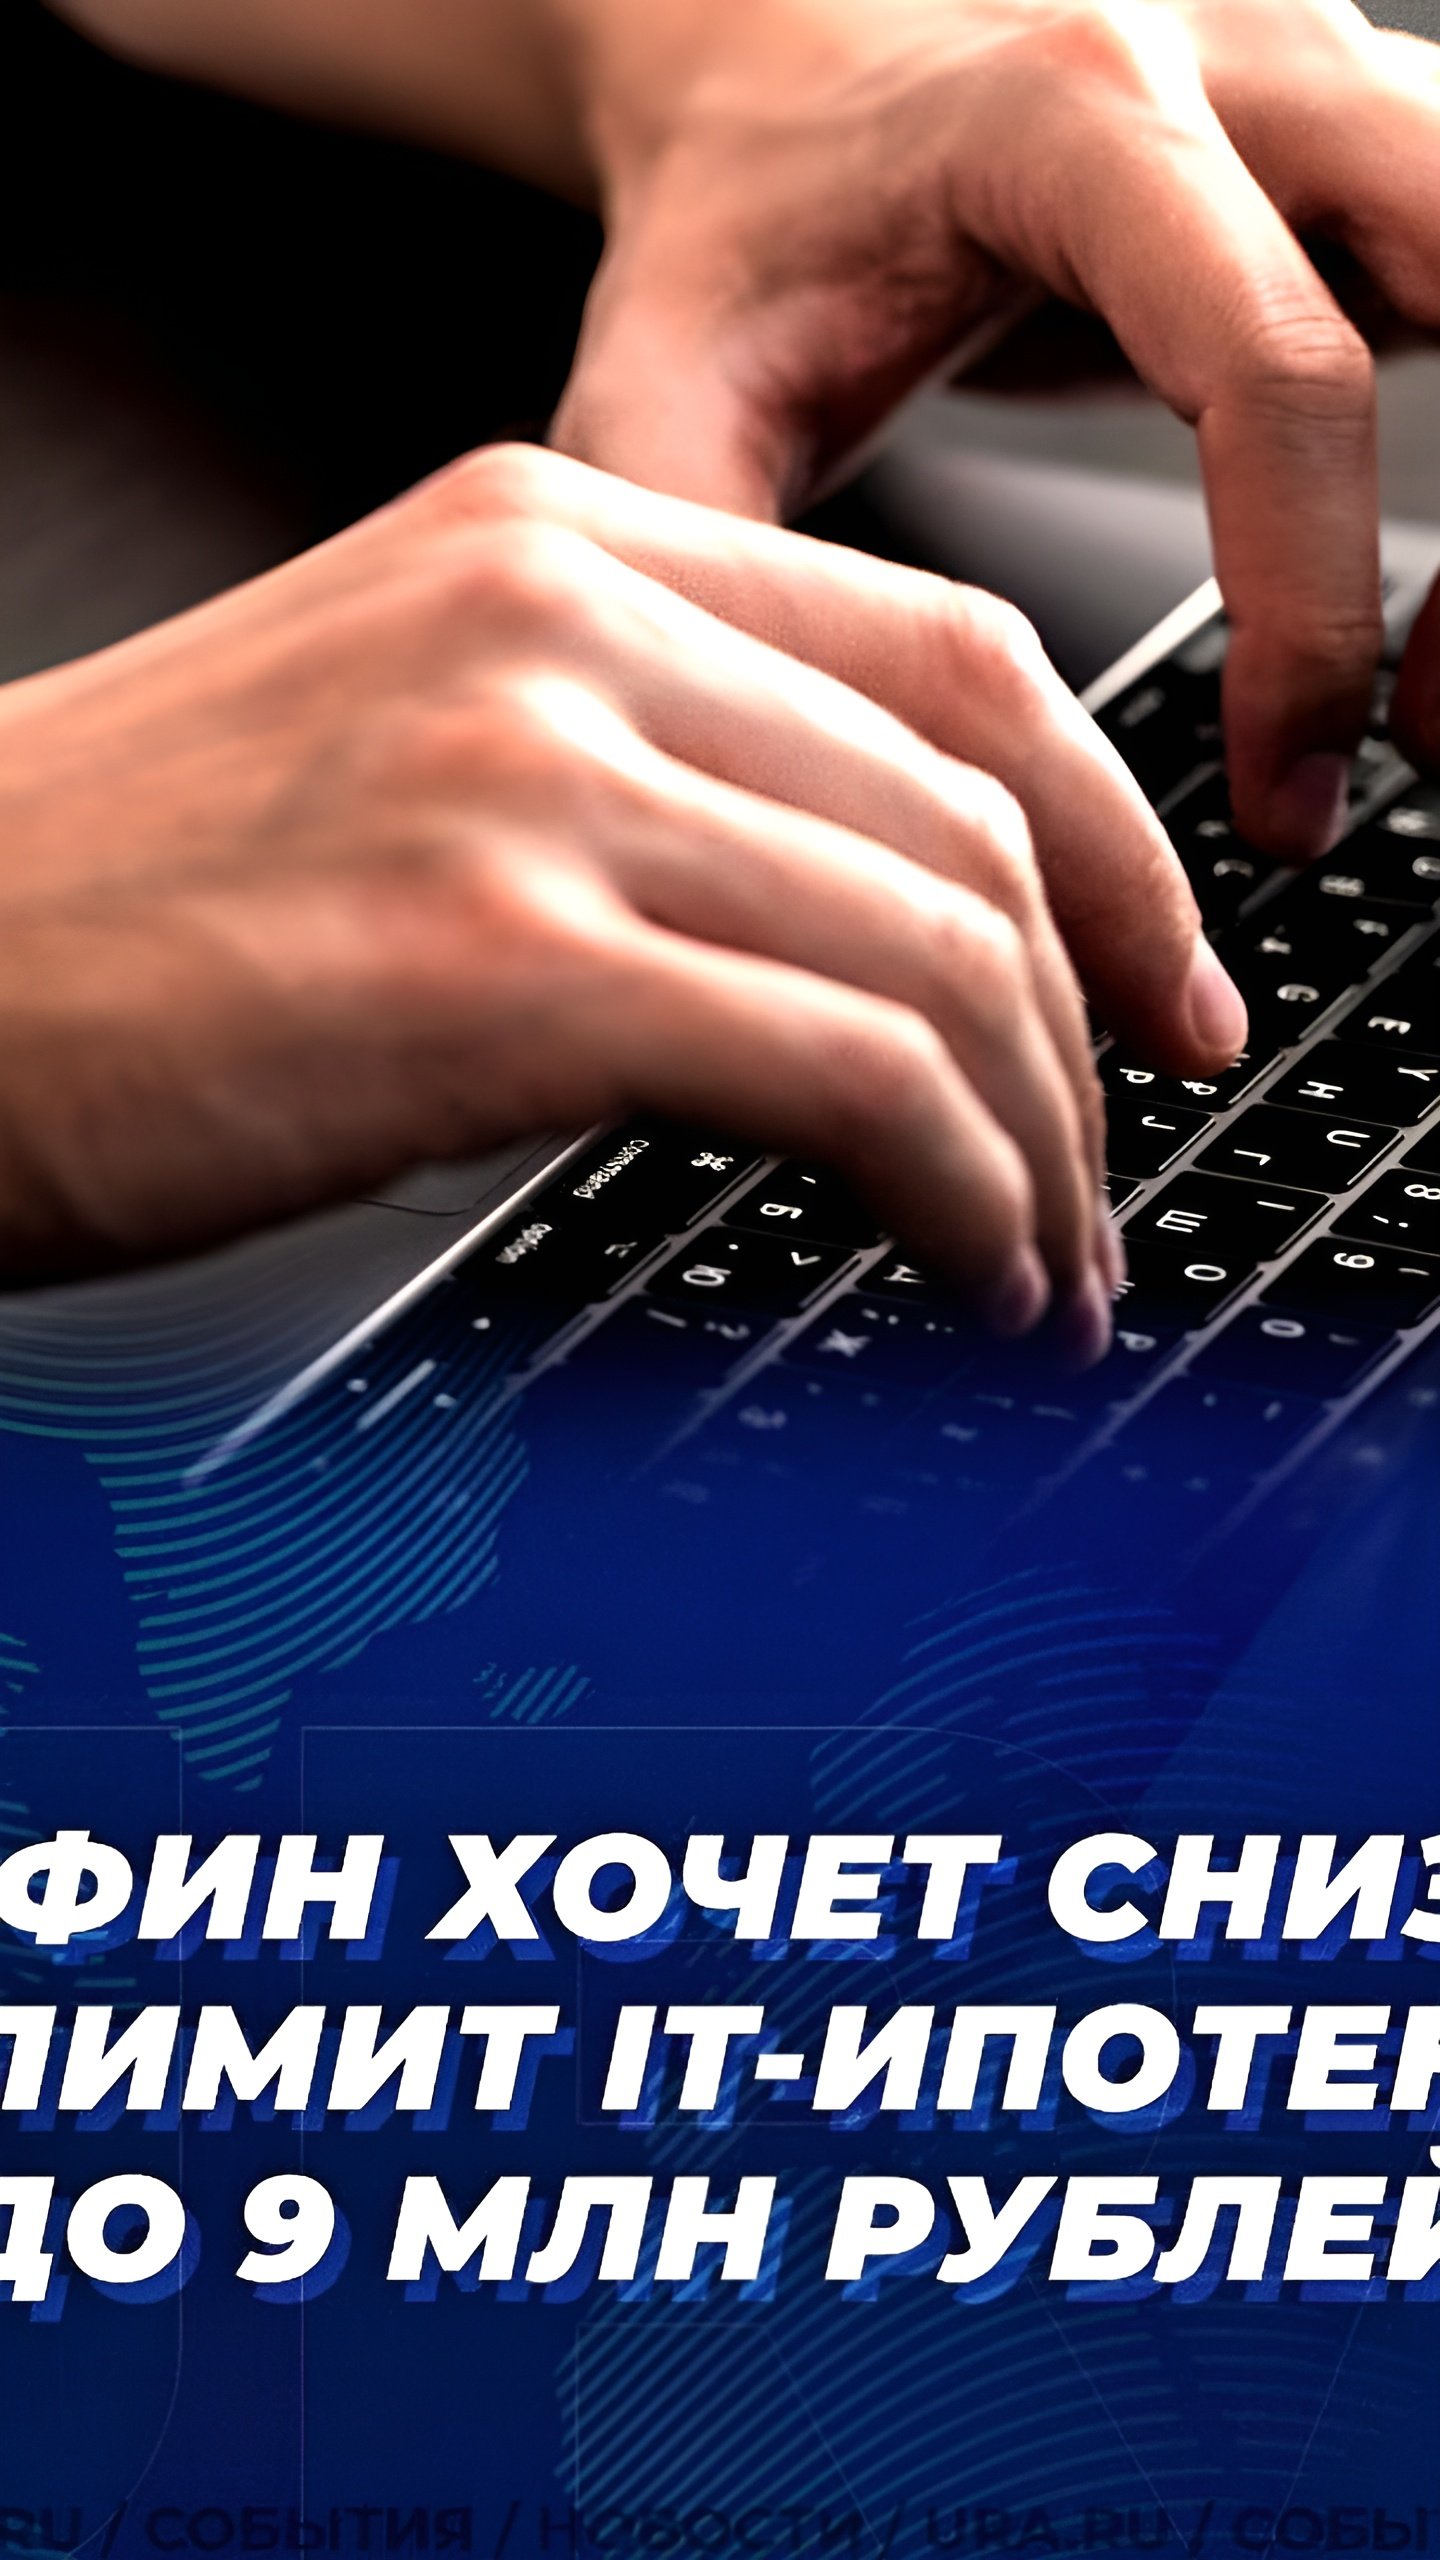 Обсуждается снижение максимальной суммы IT-ипотеки до 9 млн руб.